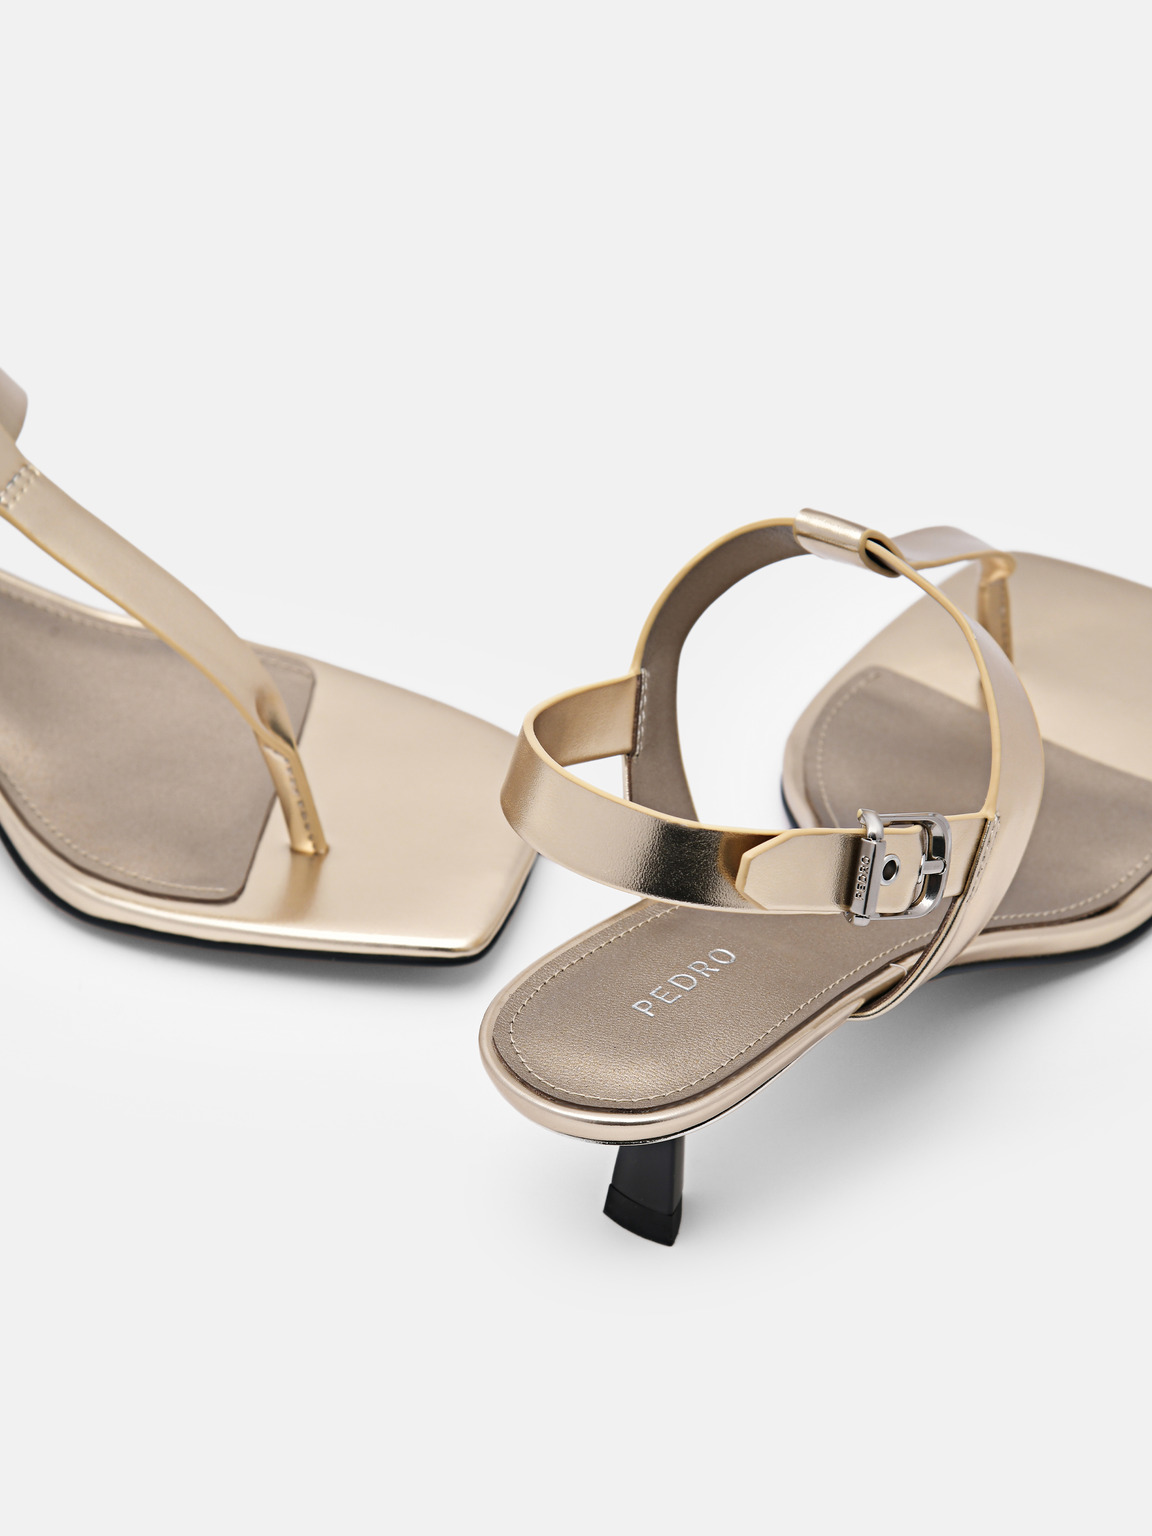 Helix Heel Sandals, Gold